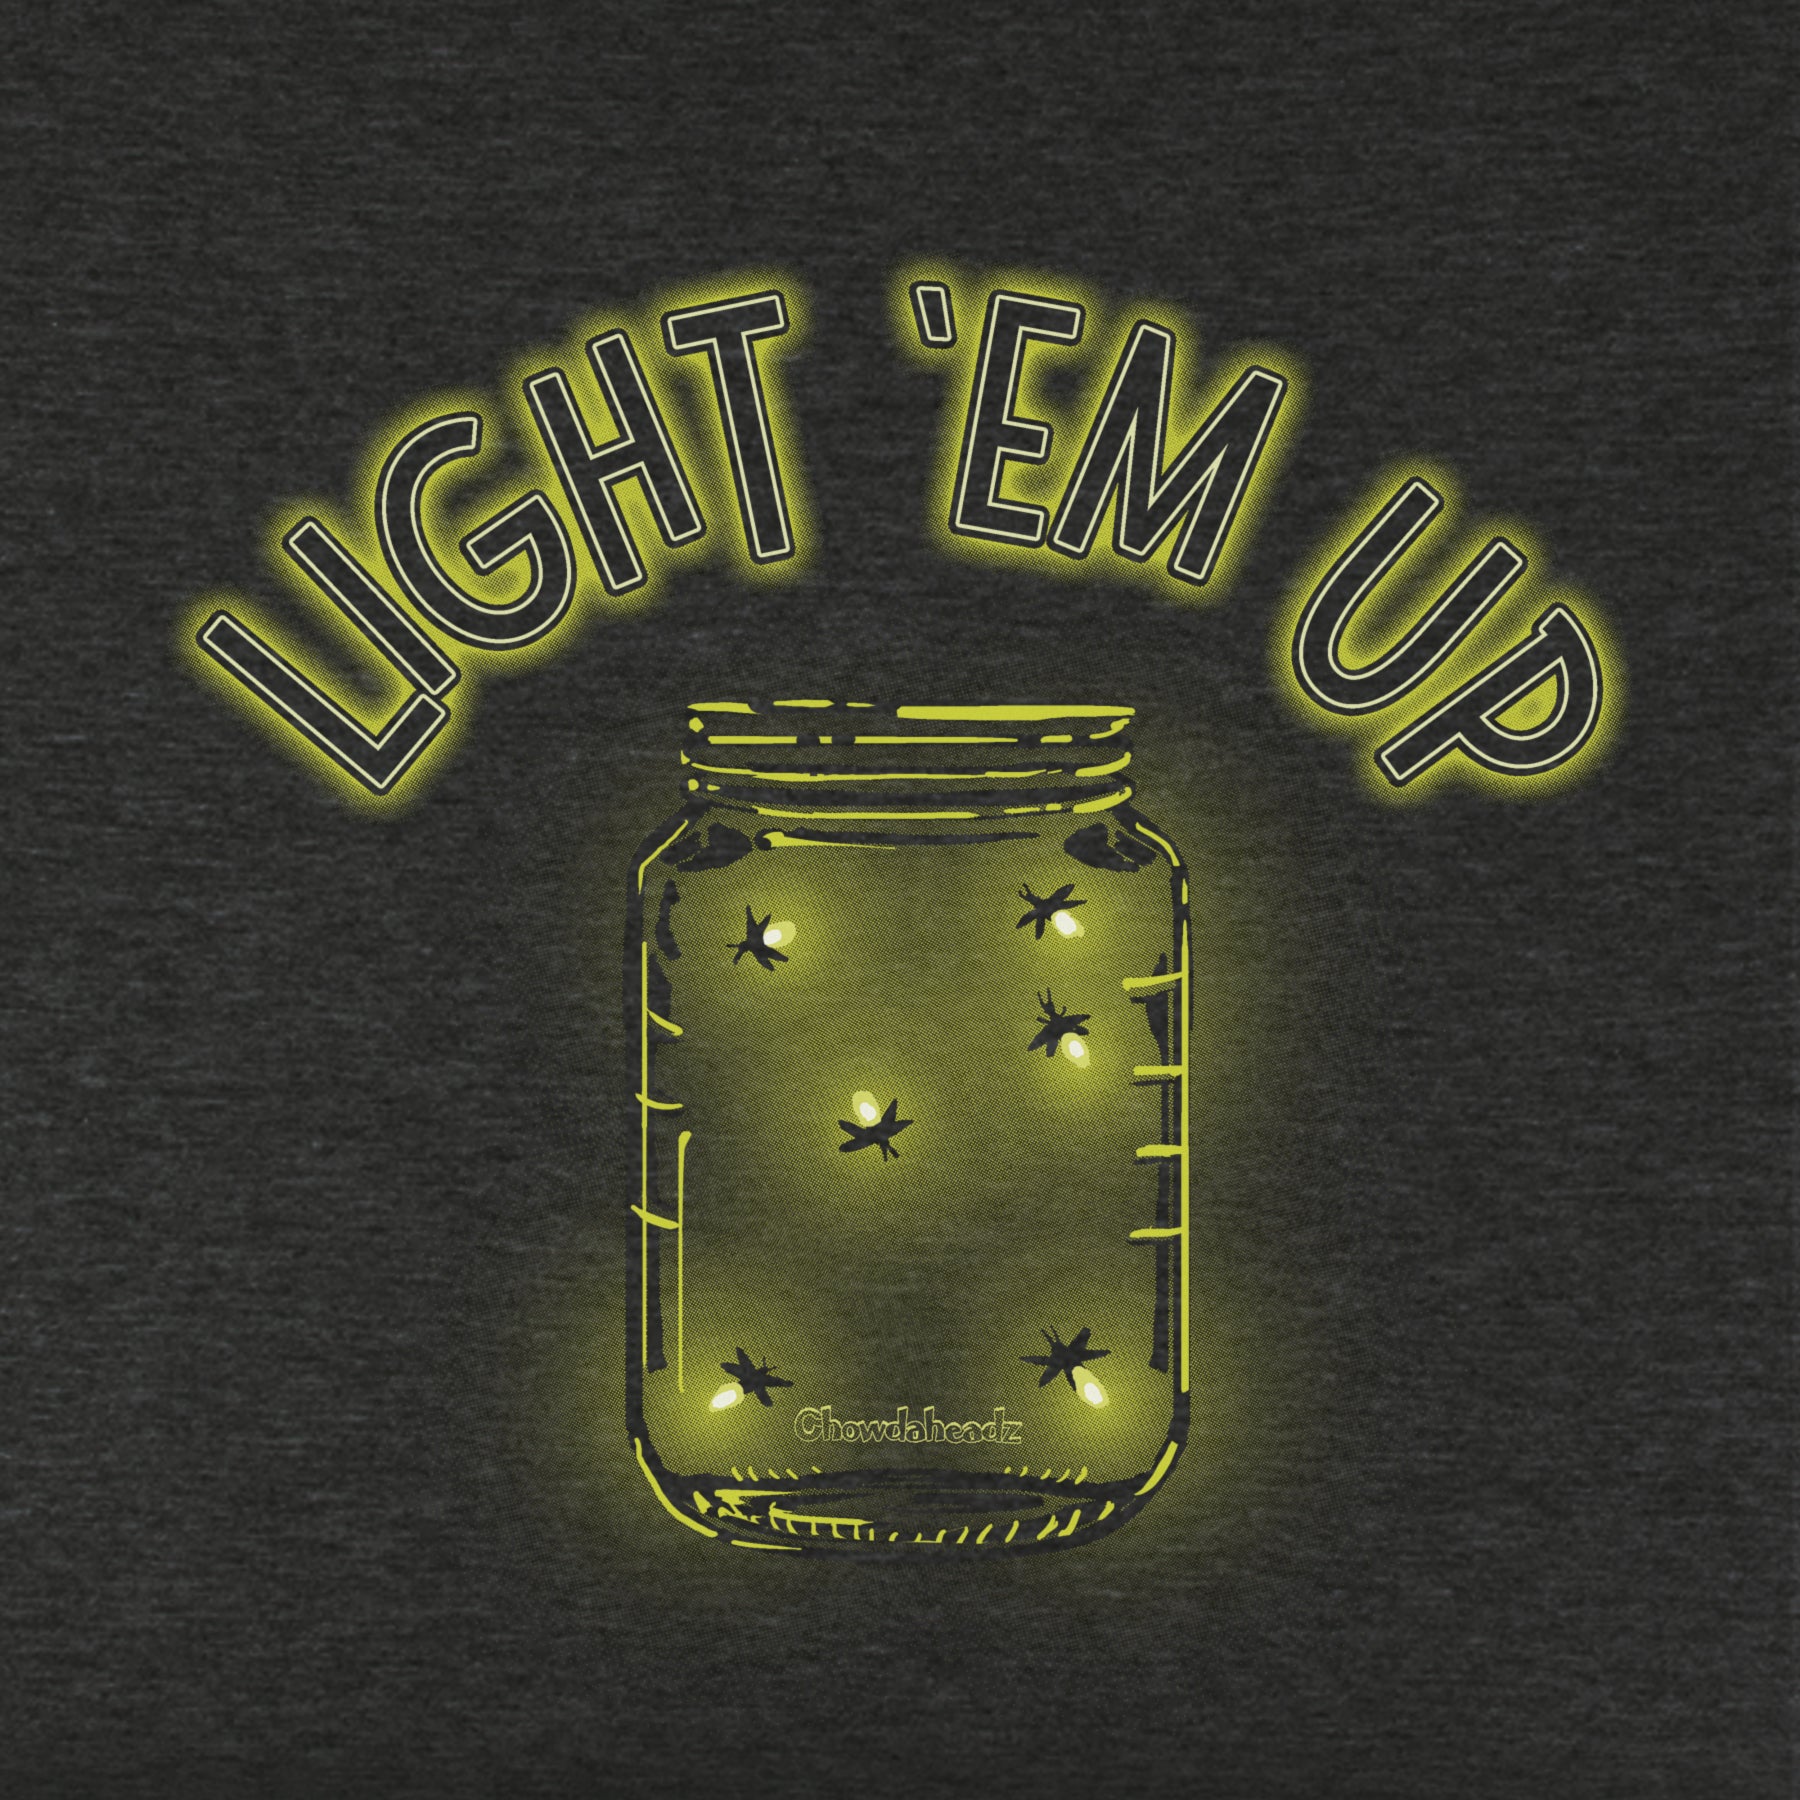 Light 'Em Up - Fireflies Youth T-shirt - Chowdaheadz